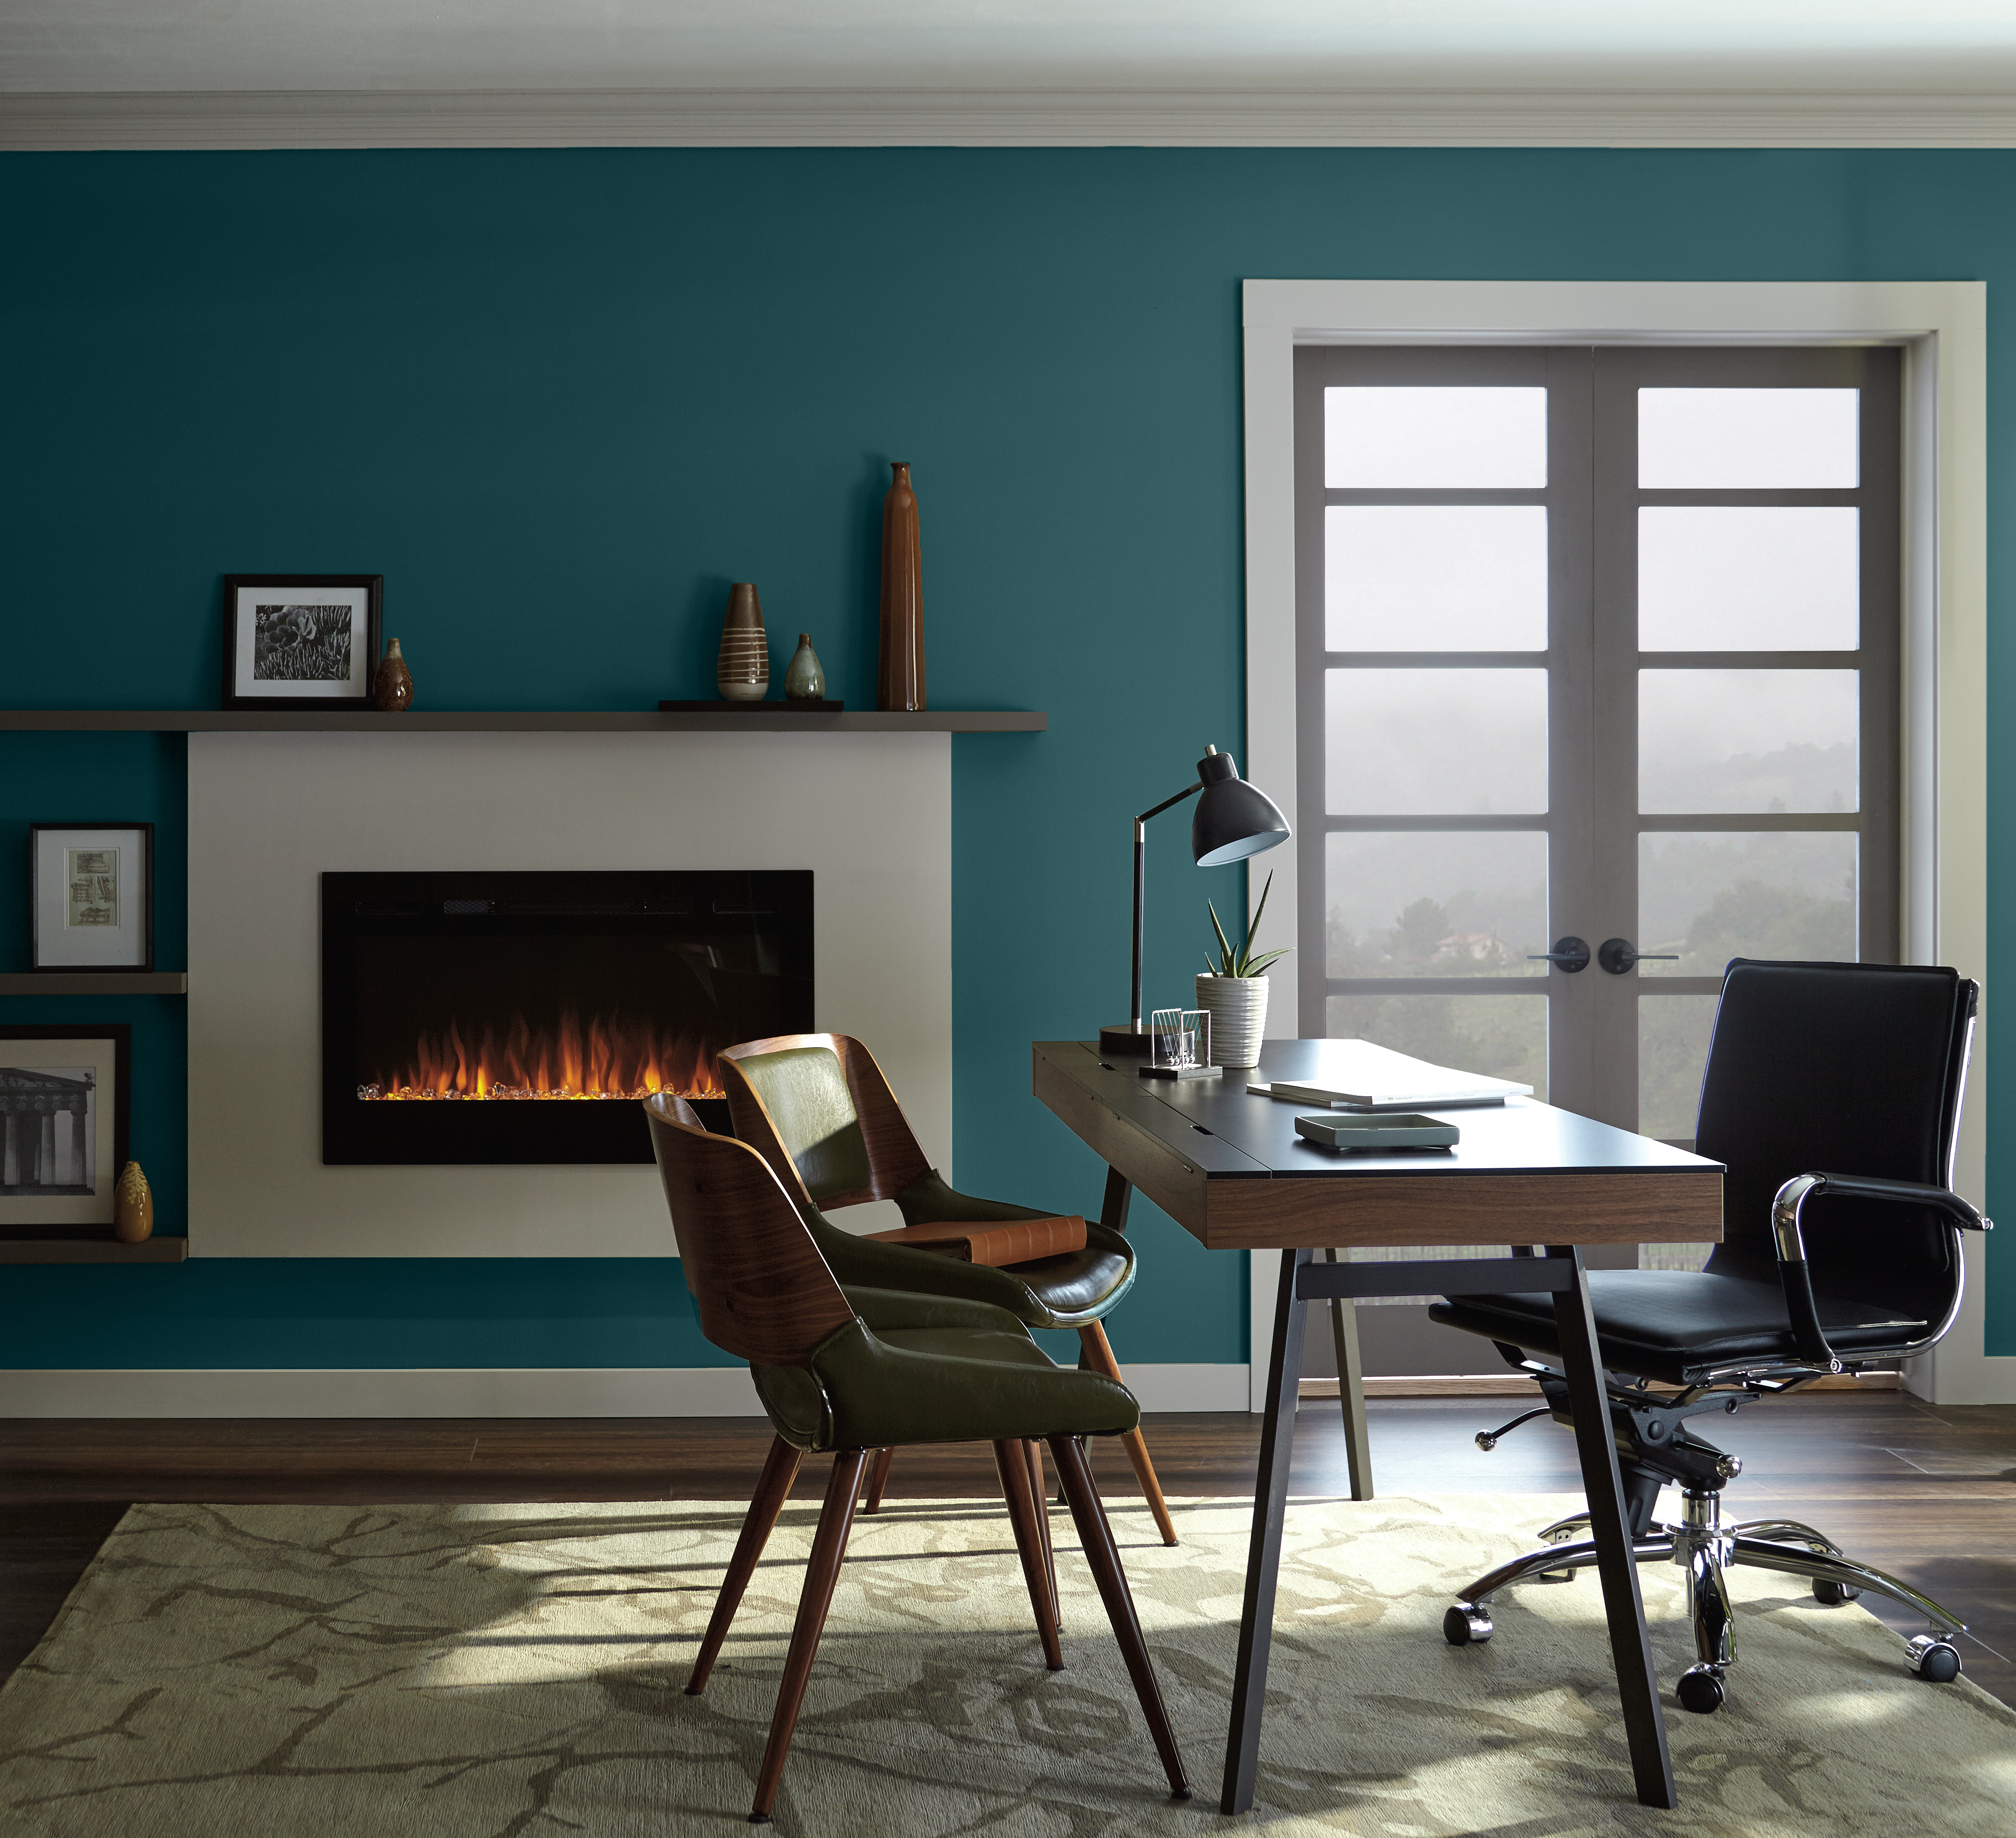 Un bureau contemporain avec un foyer. Les meubles utilisés dans la pièce ont un style rétro. Il y a aussi une double porte en bois et en verre qui permet d'apercevoir un paysage vert et brumeux.